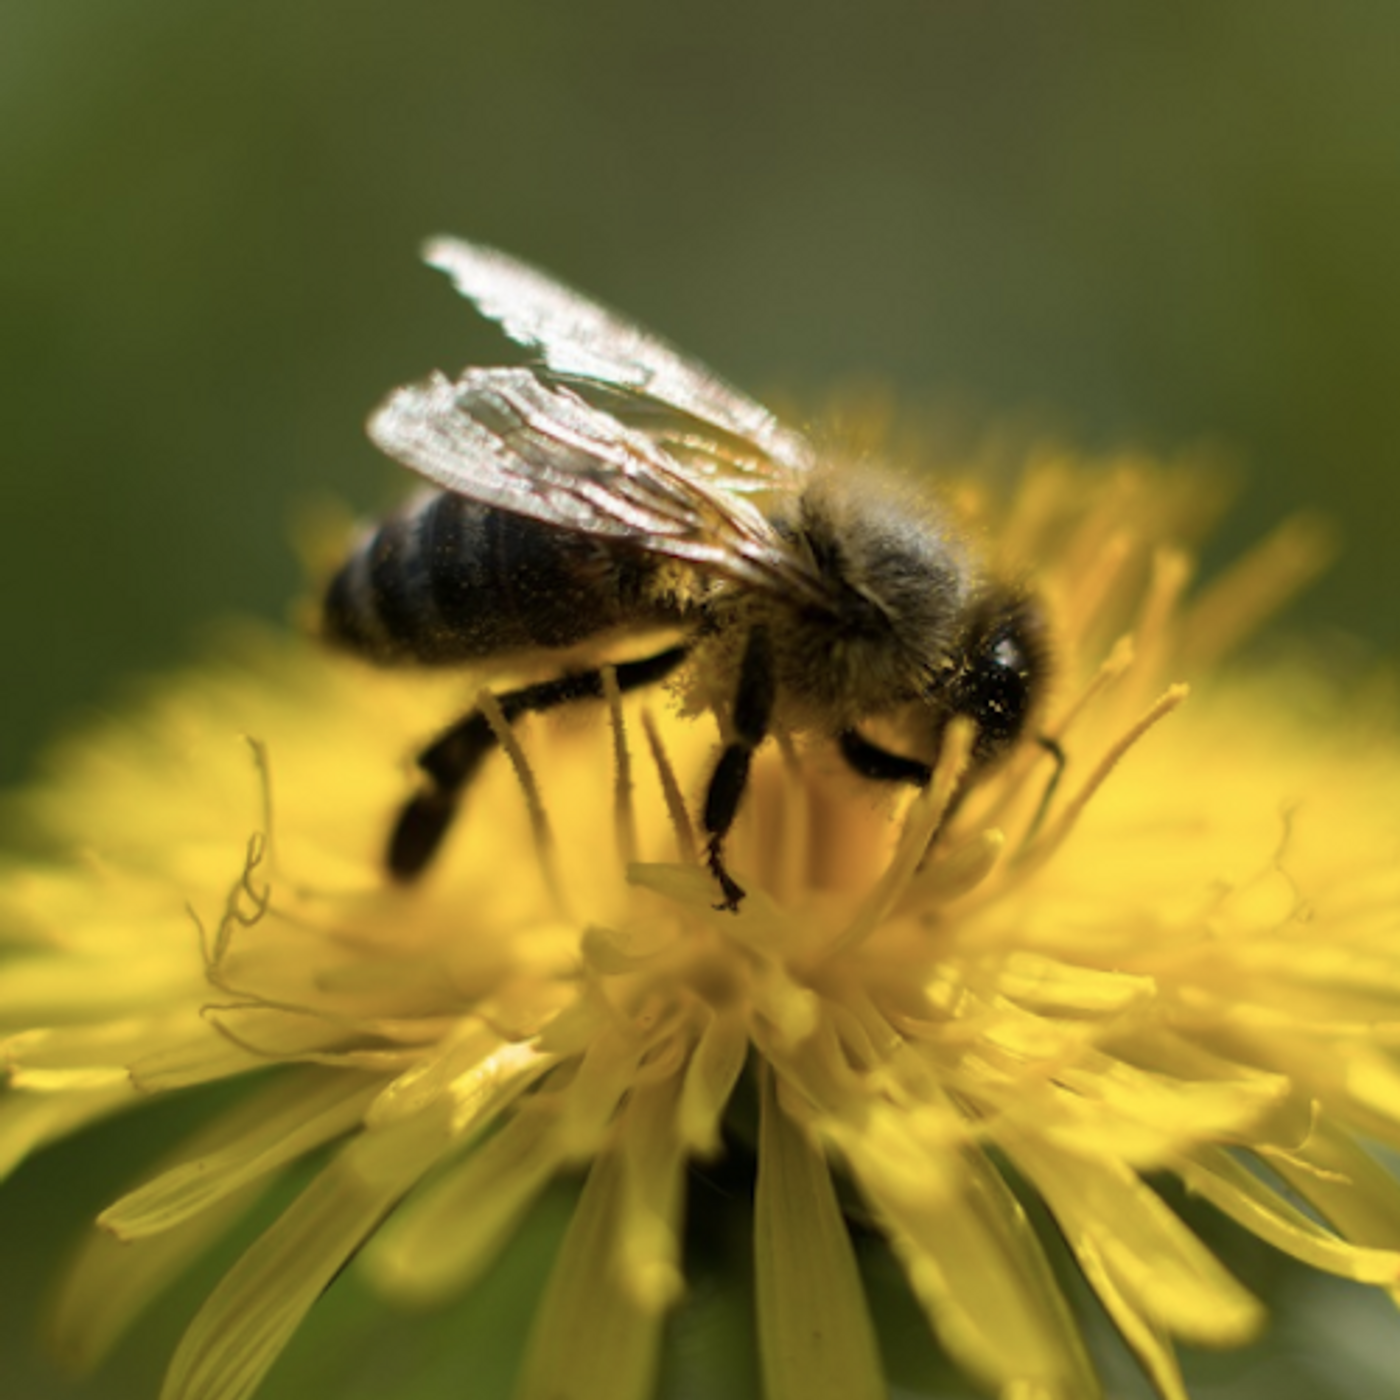 Honeybee / Credit: Maxpixel